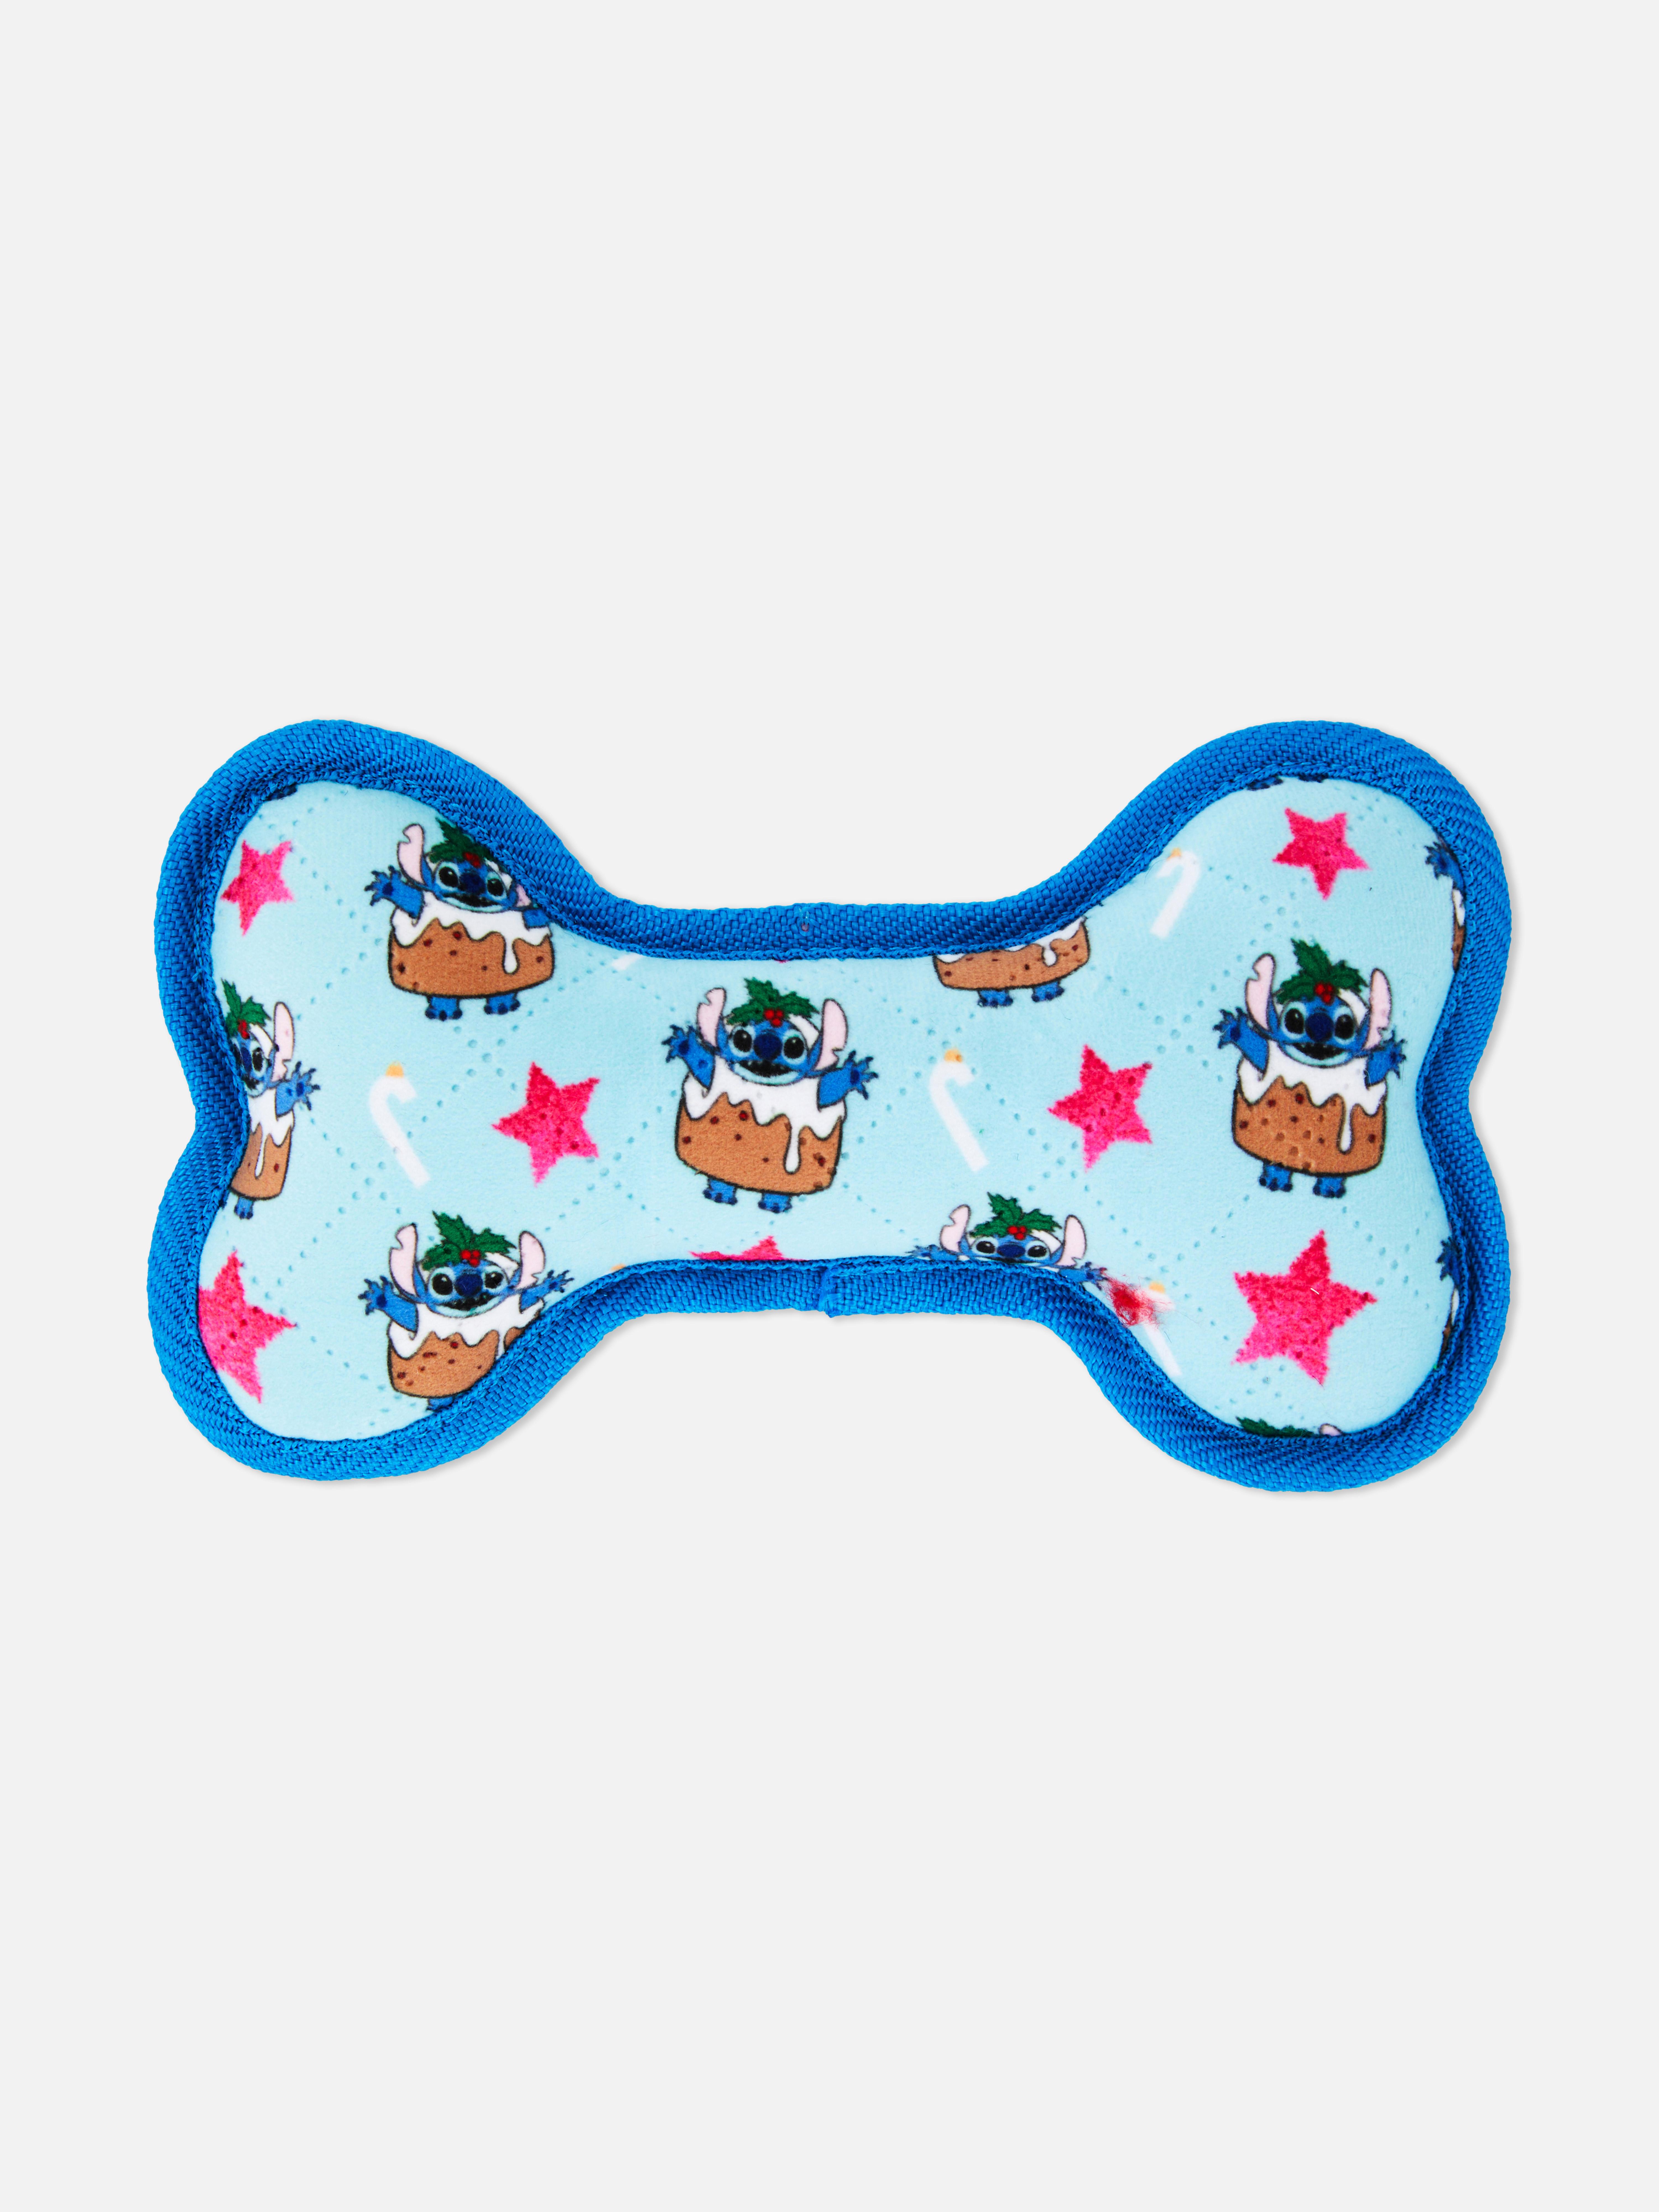 „Disney Lilo & Stitch“ Weihnachts-Knochenspielzeug